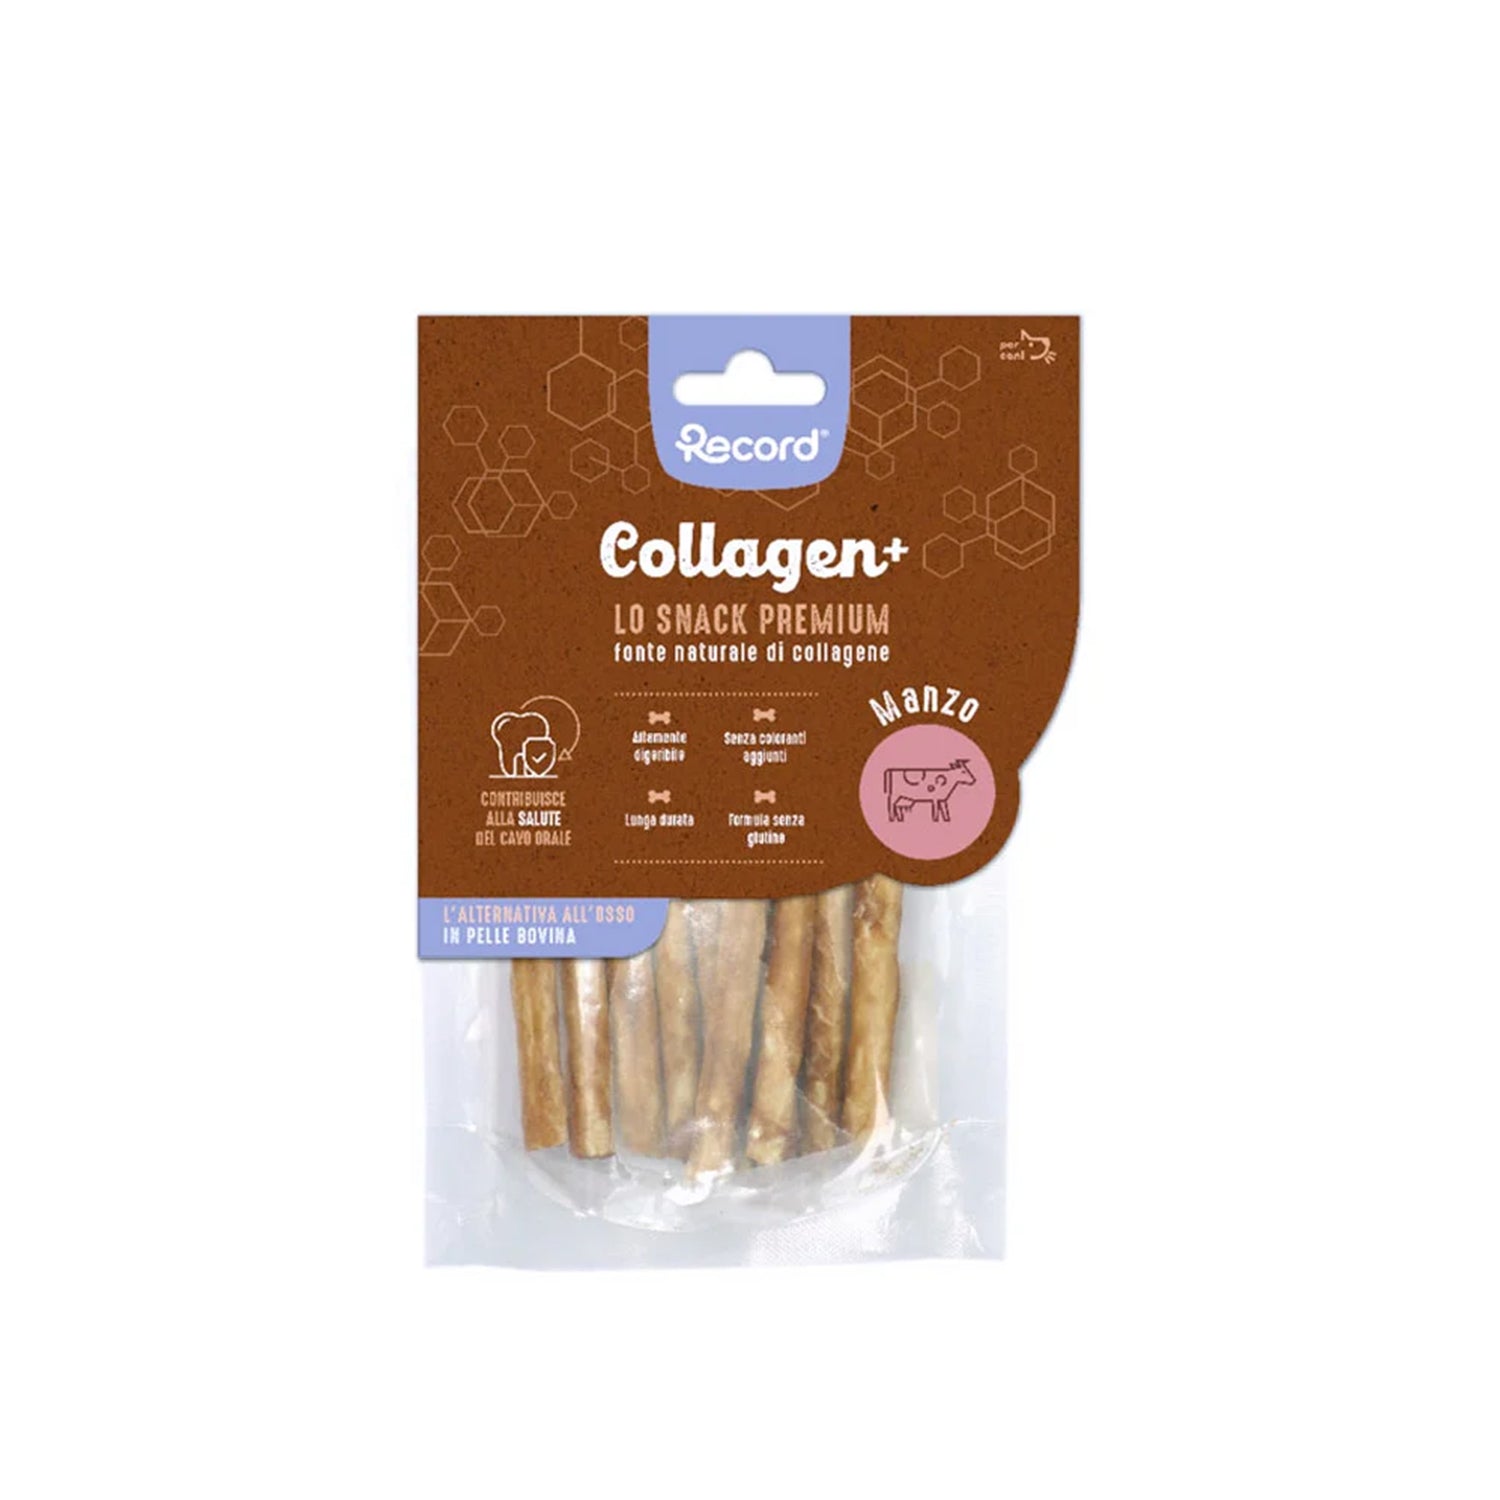 Collagen+ gusto "manzo" - 60g 10 sticks per cani